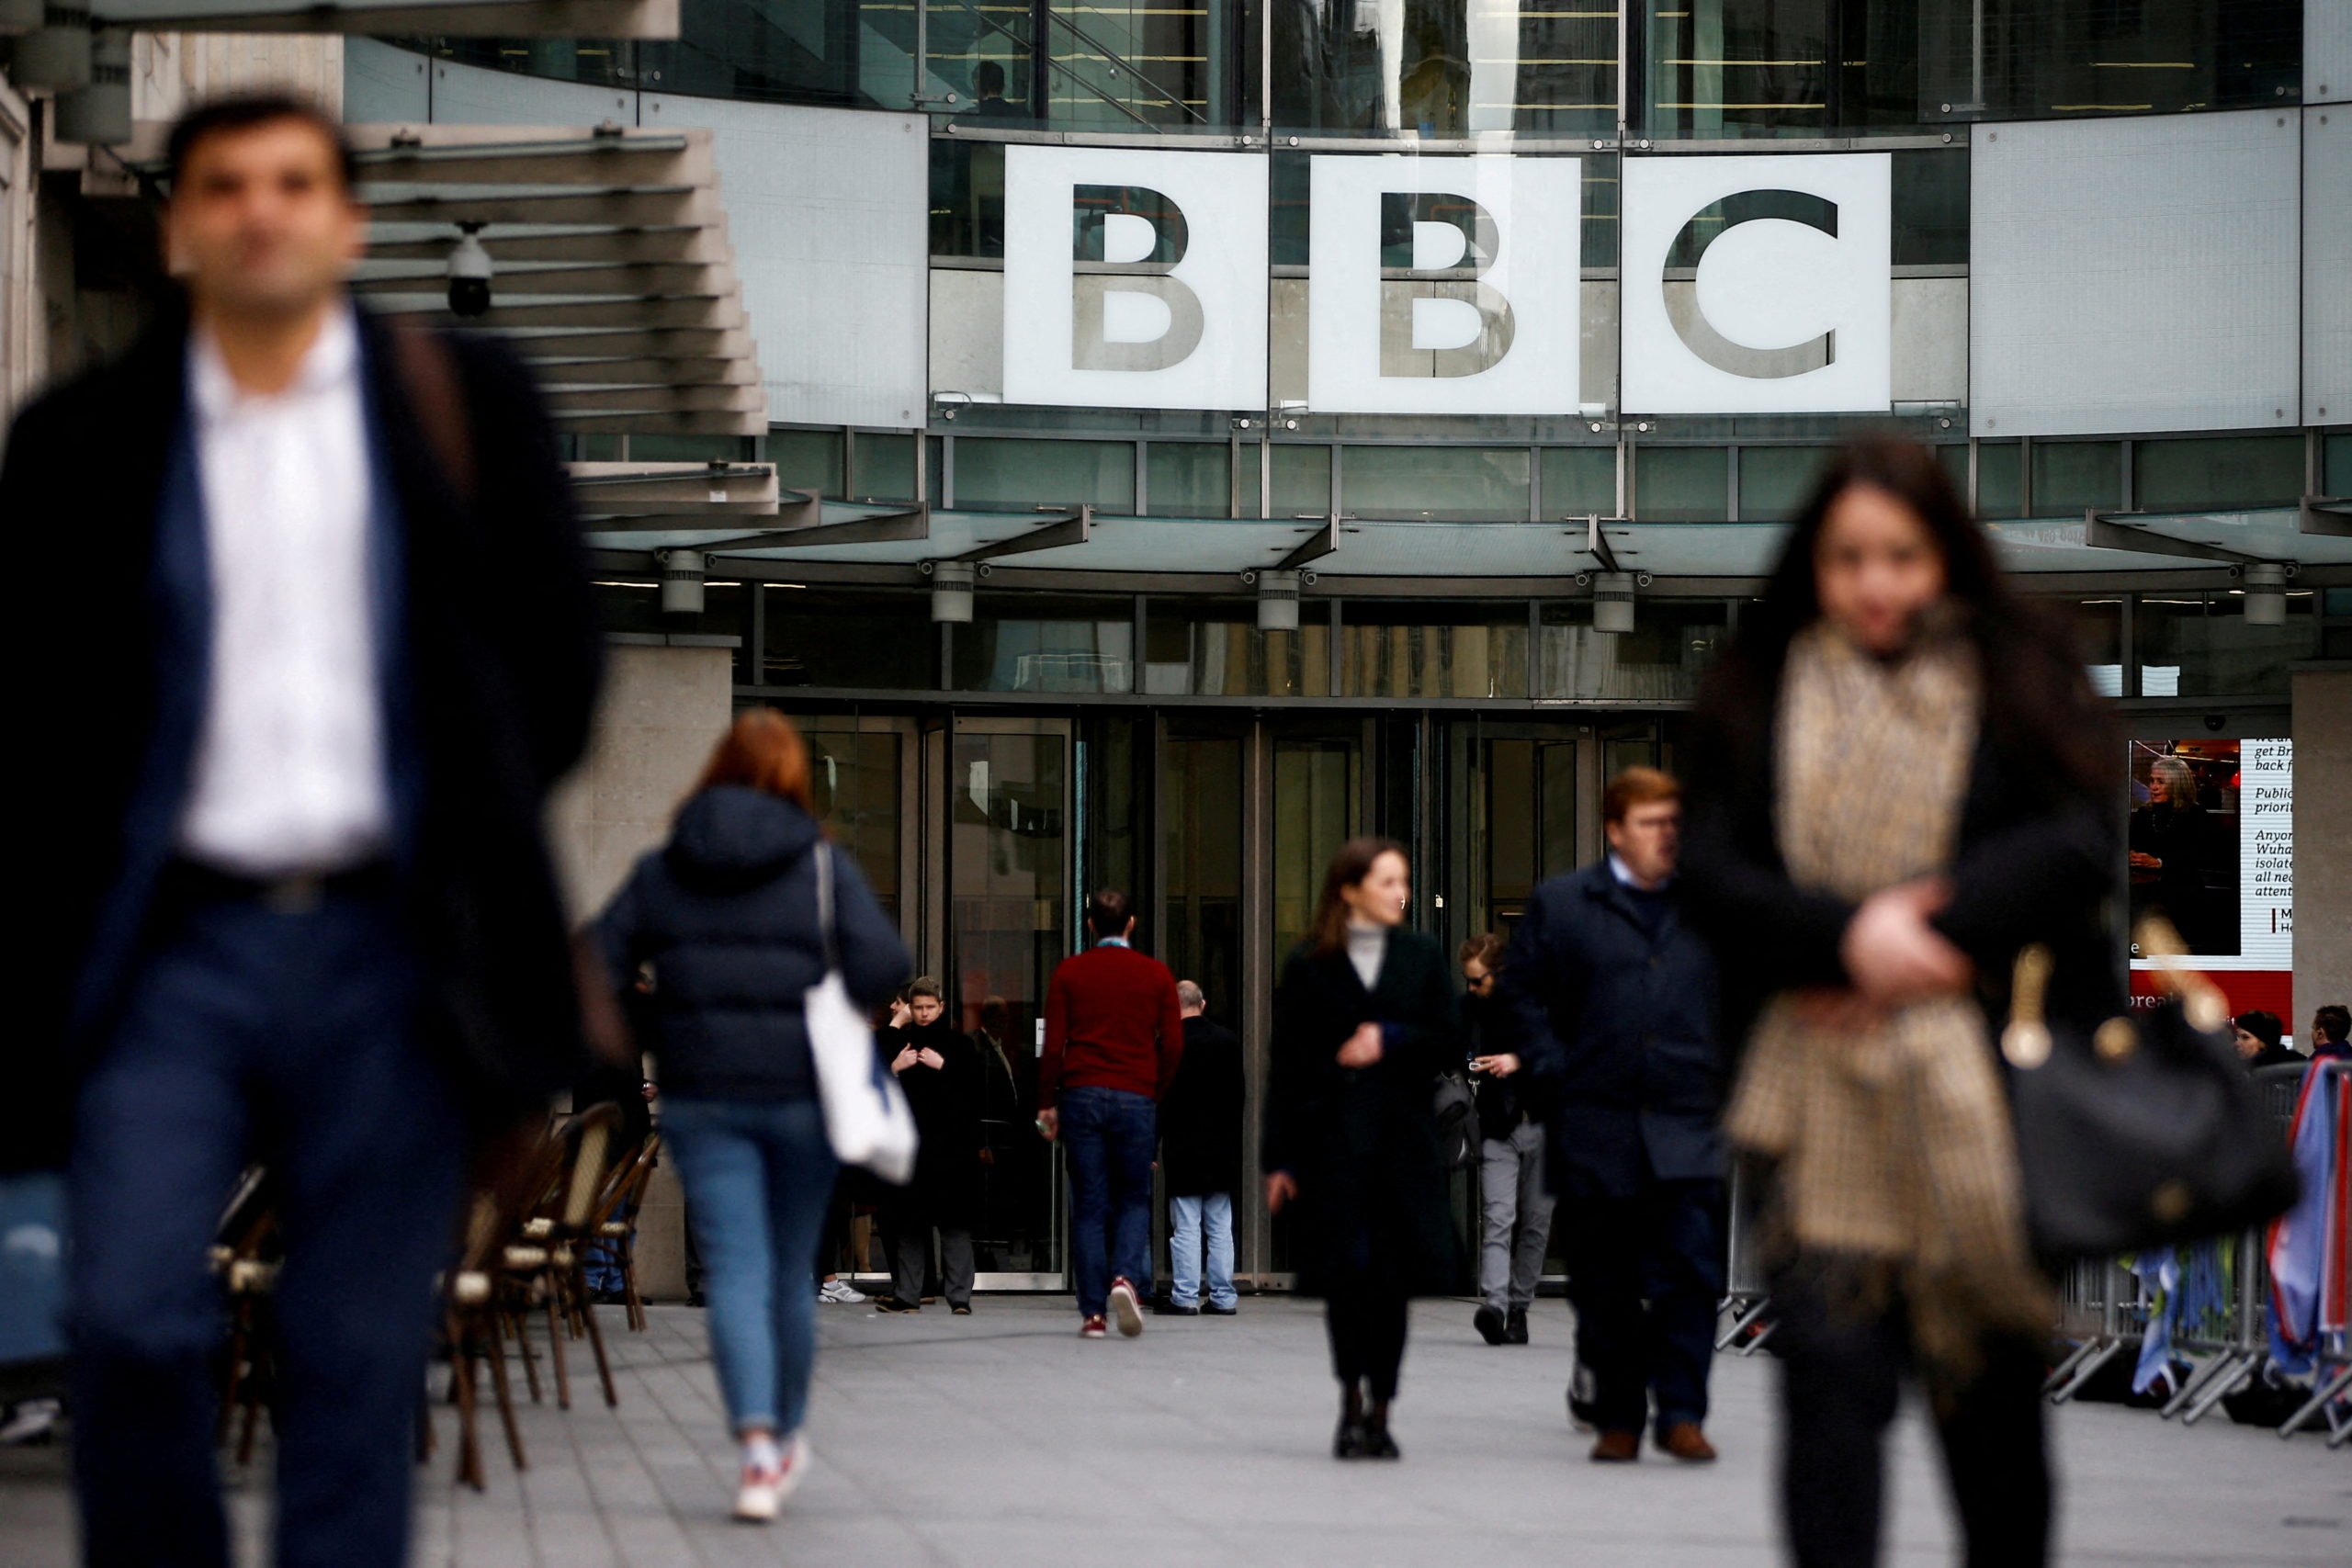 Presidente de la BBC dimite por su implicación en un préstamo a Boris Johnson